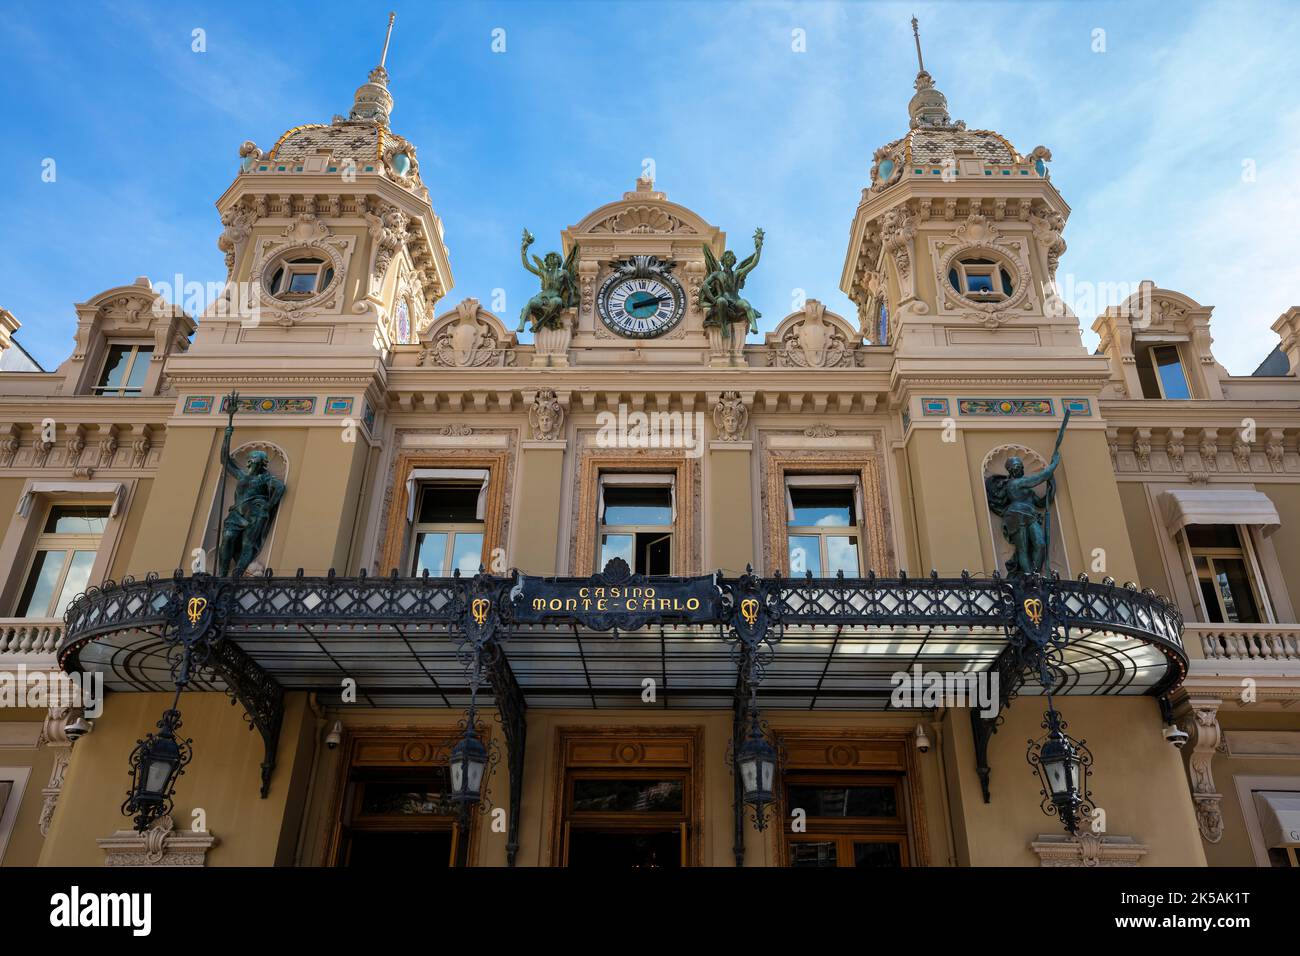 Famous casino building by Golden Square in Monte Carlo, Principality of Monaco. Stock Photo